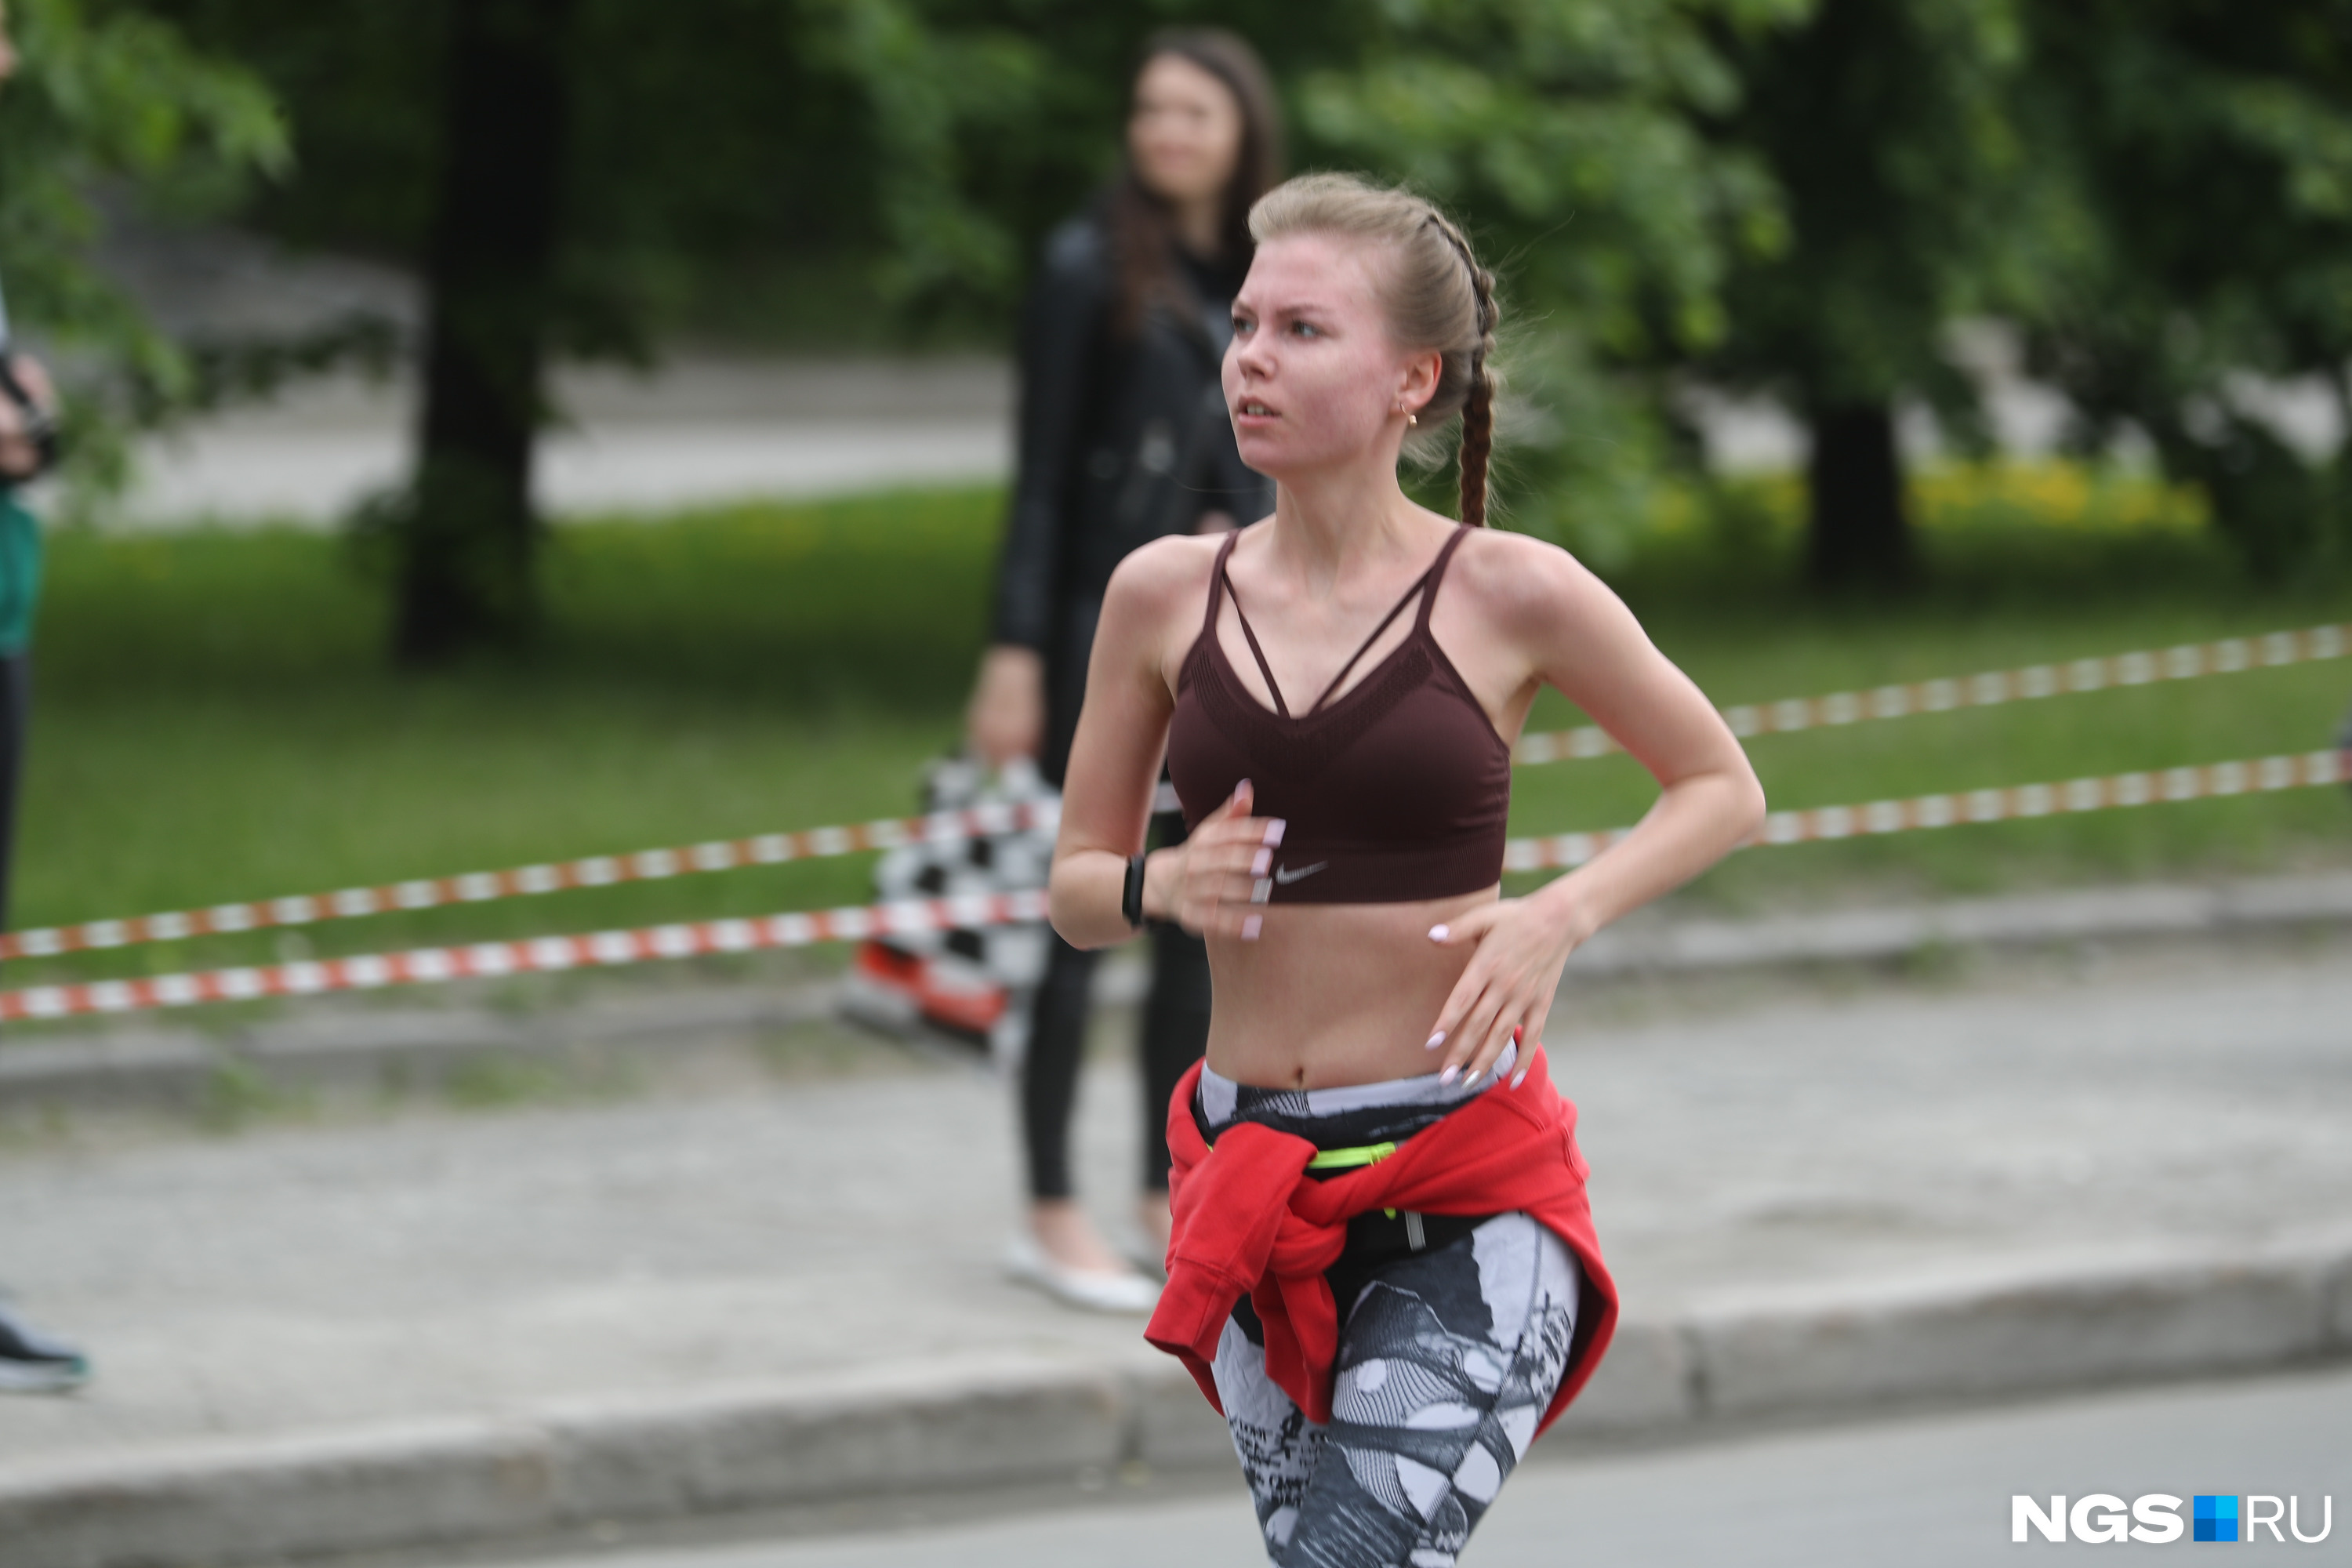 Забеги 2021 календарь. Забег Новосибирск 2021. Зеленый марафон Новосибирск 2021. Илизаровский забег 2021 году.